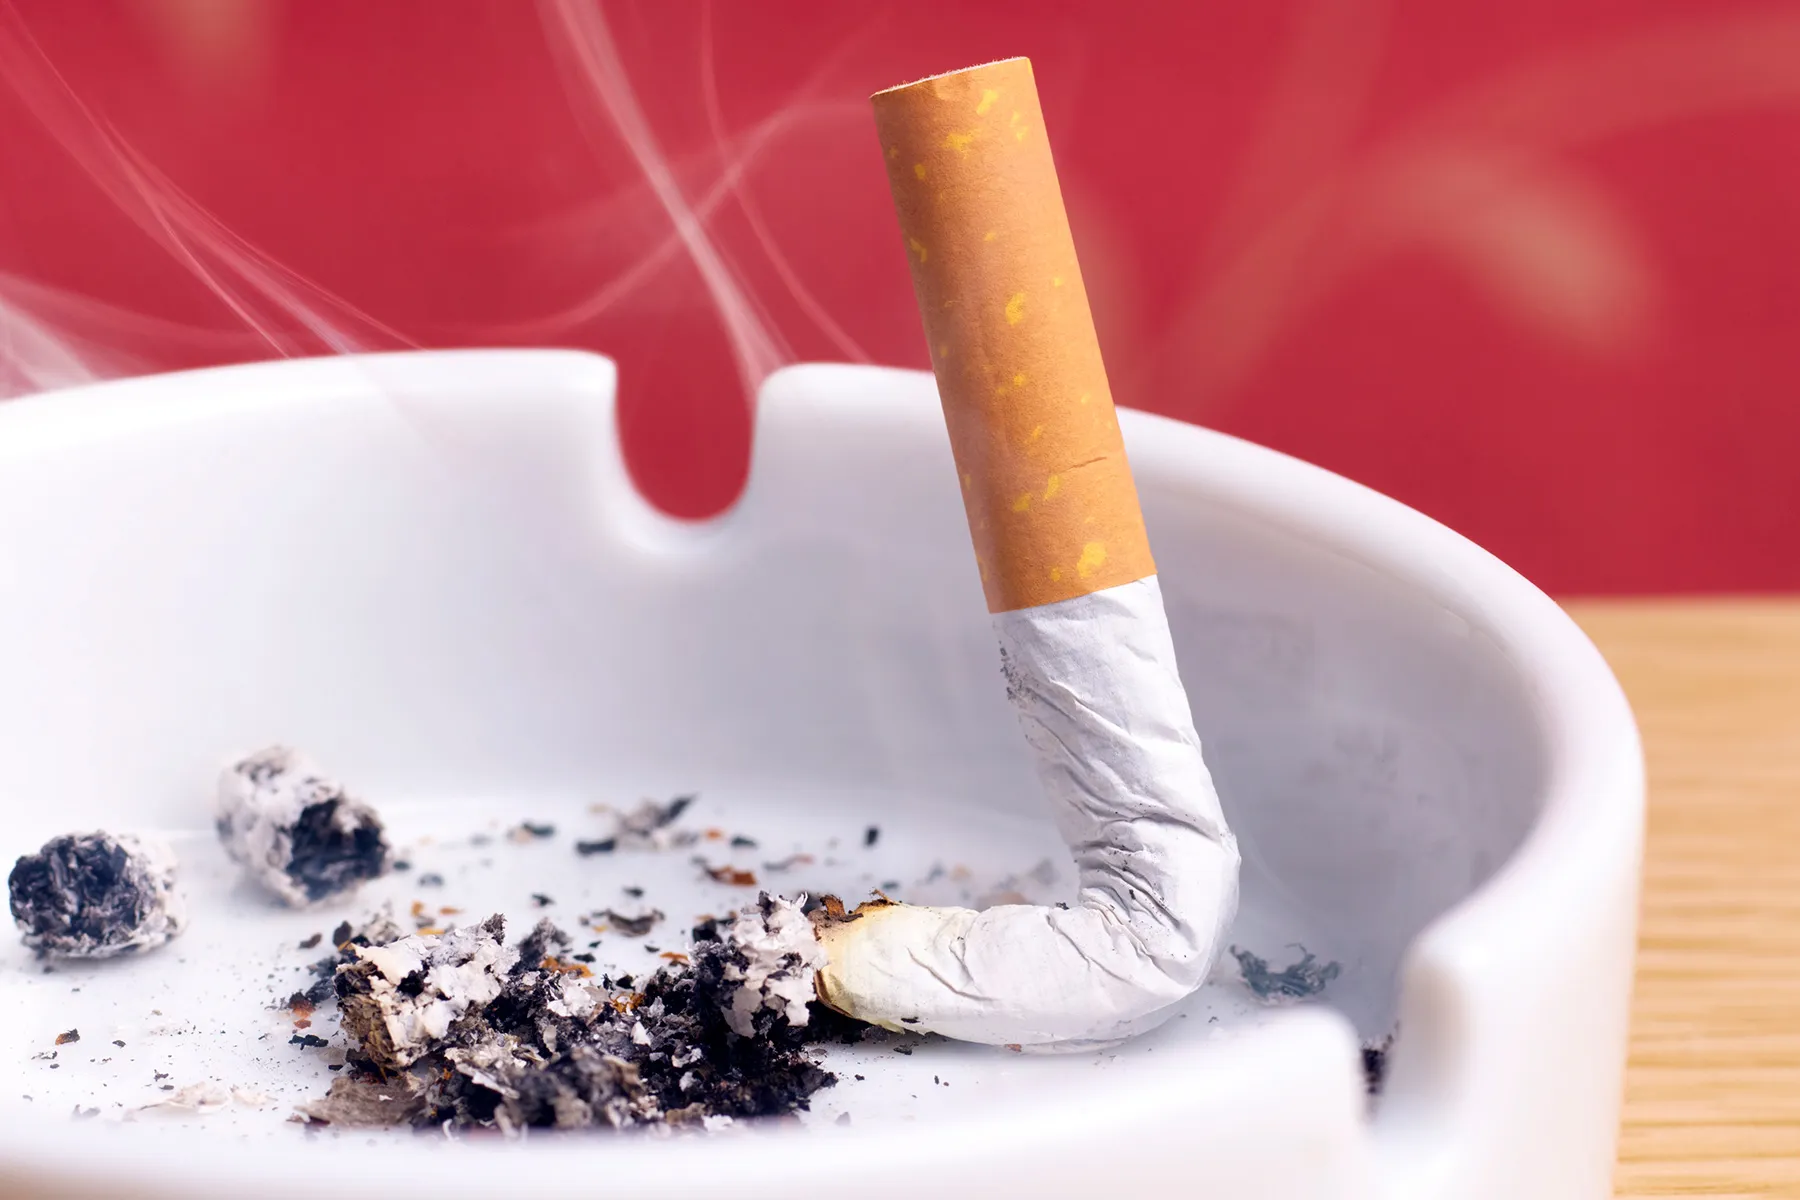 photo of cigarette butt in ashtray